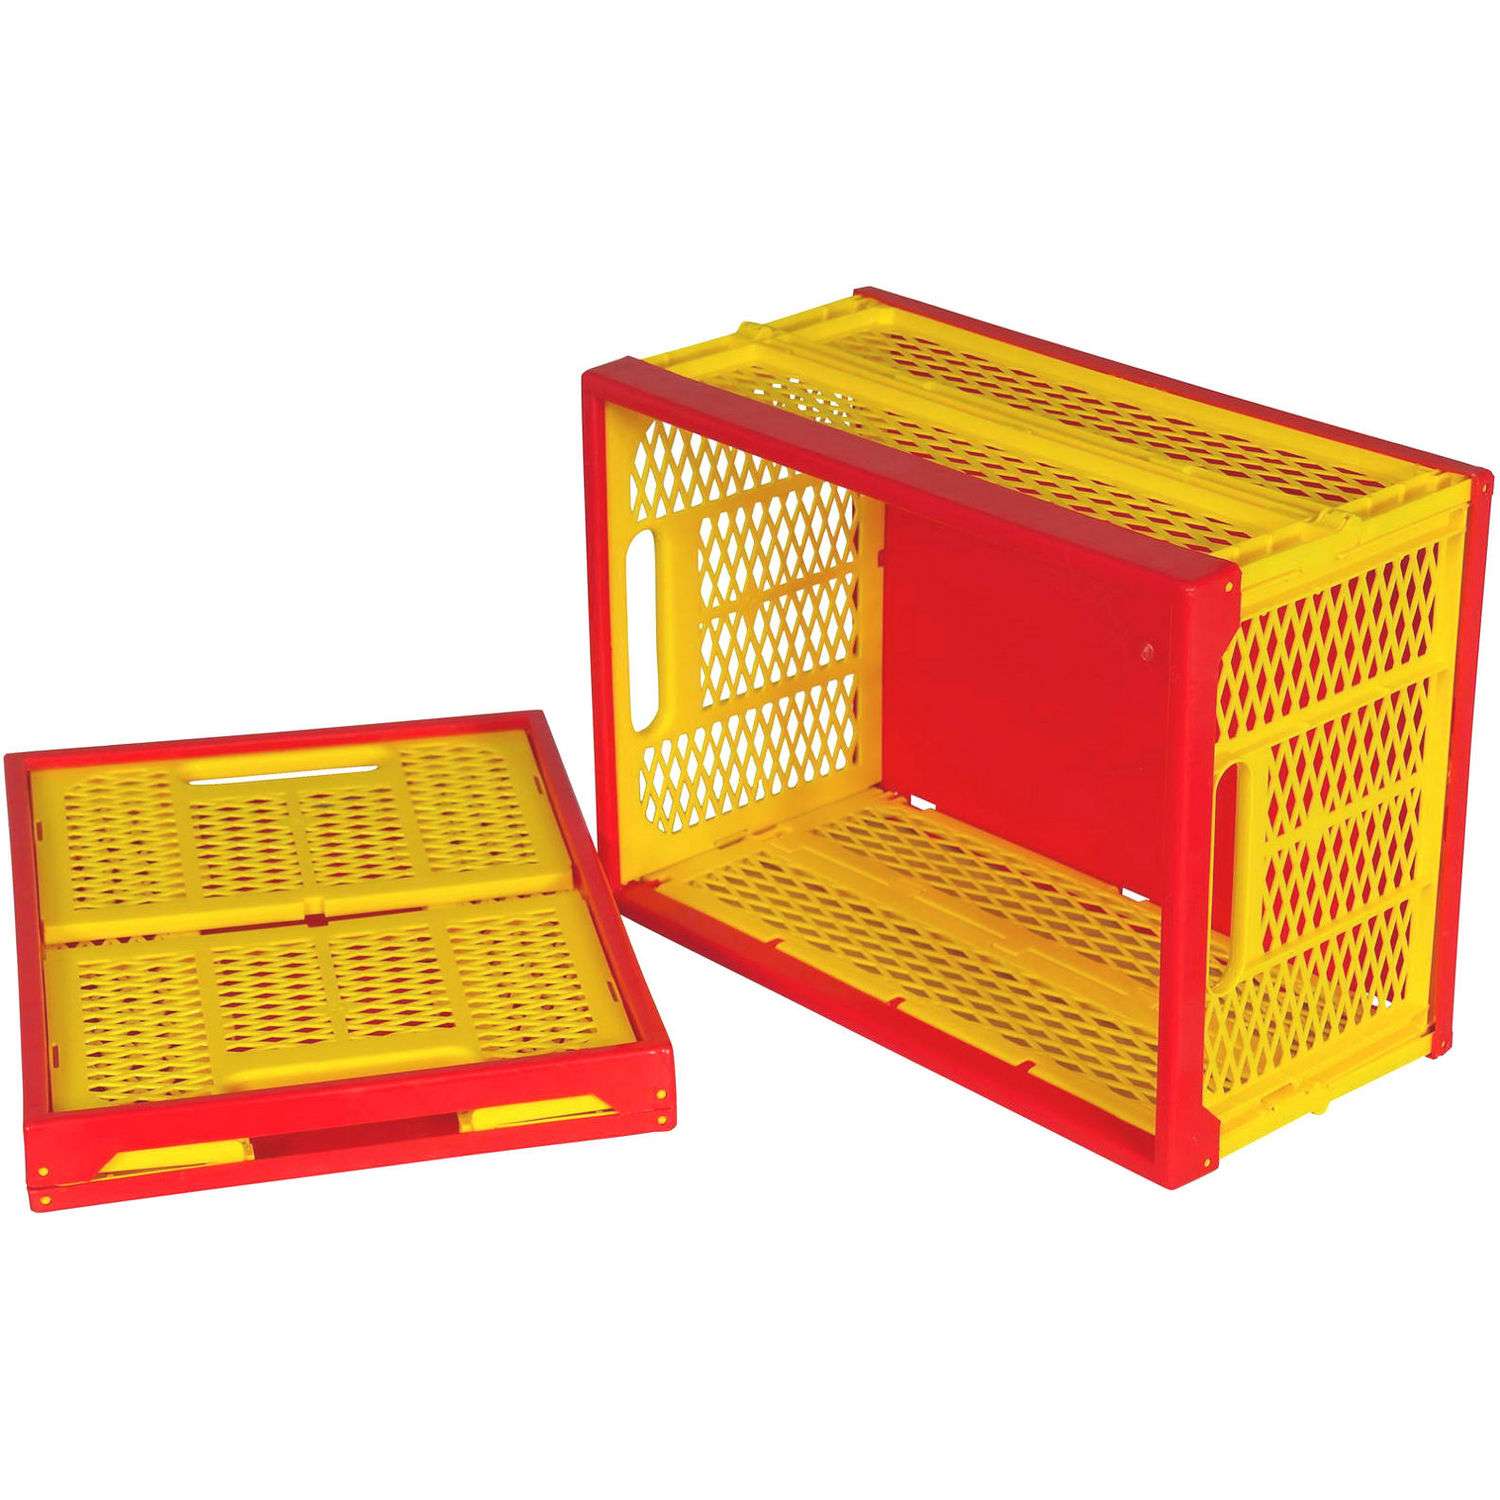 Ящик для игрушек Пеликан складной перфорированный красно-желтый - фото 2